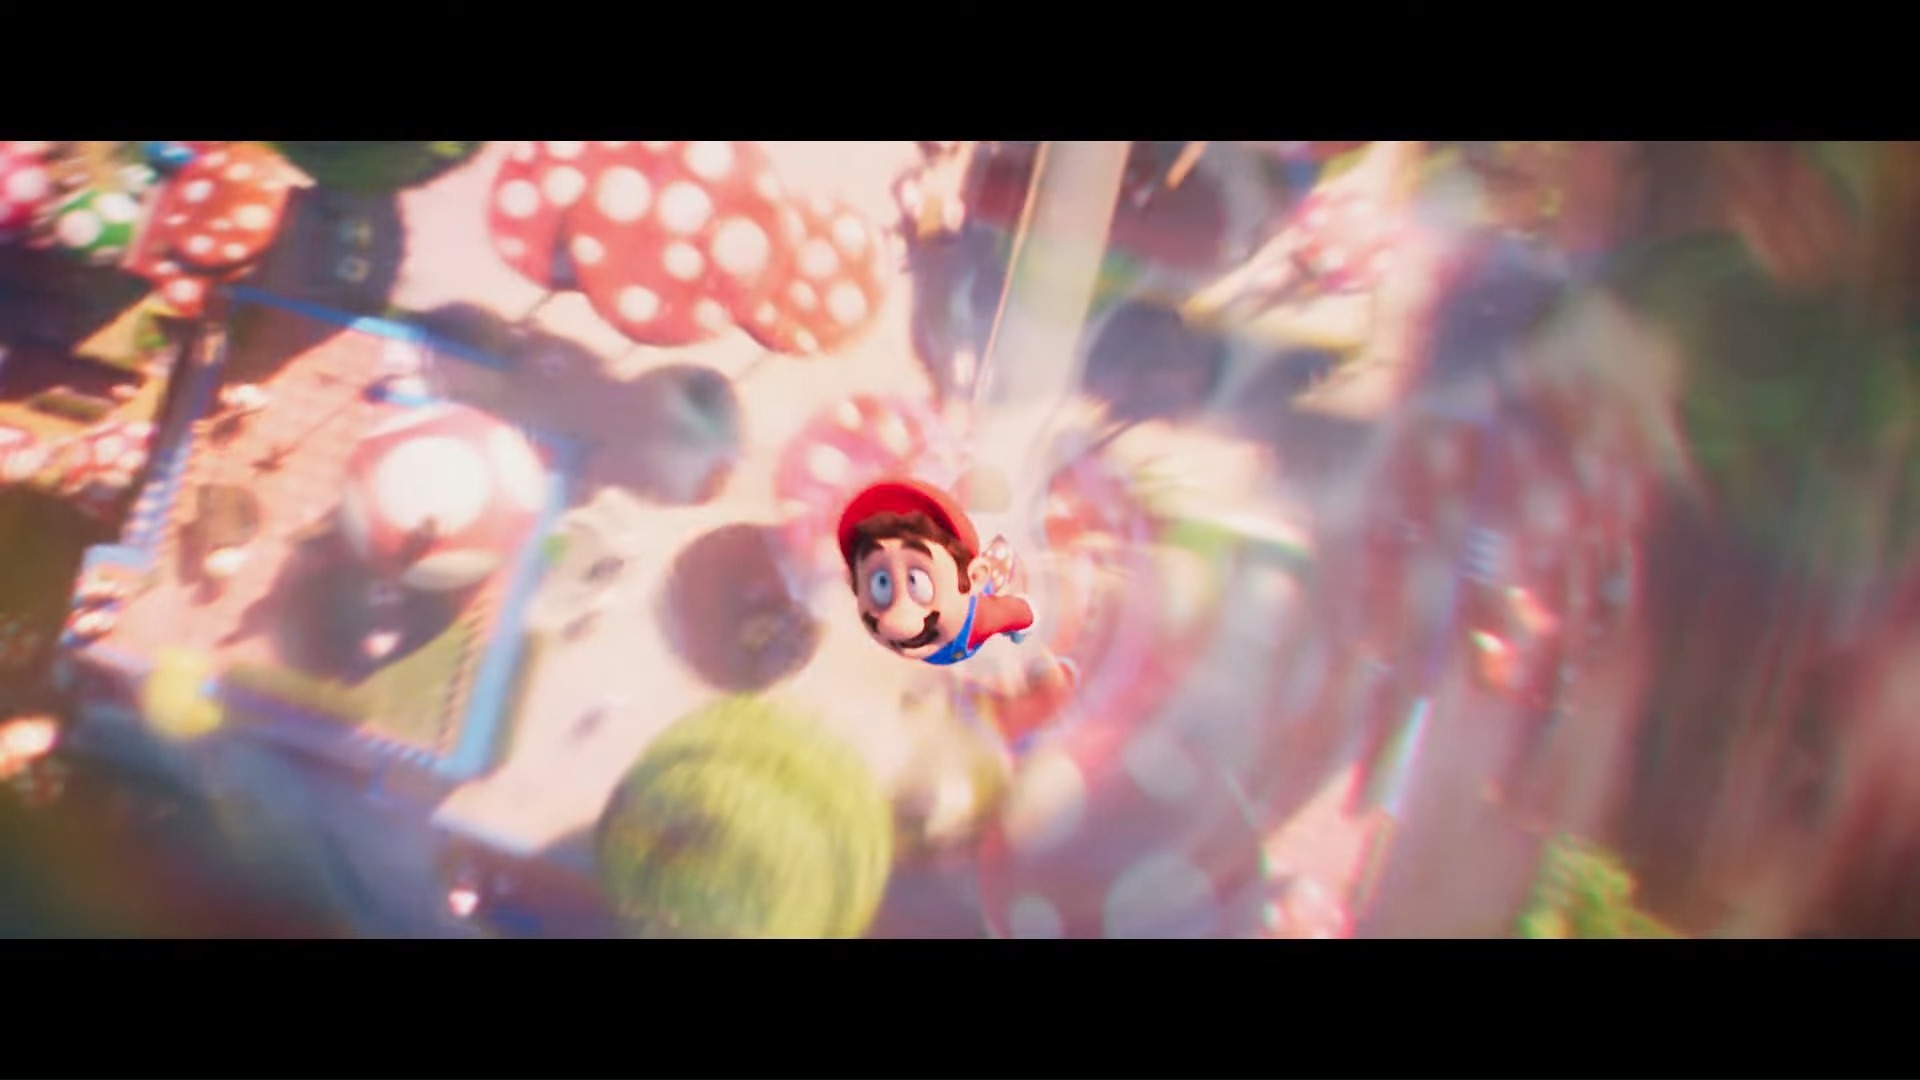 动画电影《超级玛利欧兄弟电影版》公开「蘑菇王国」电影宣传影片